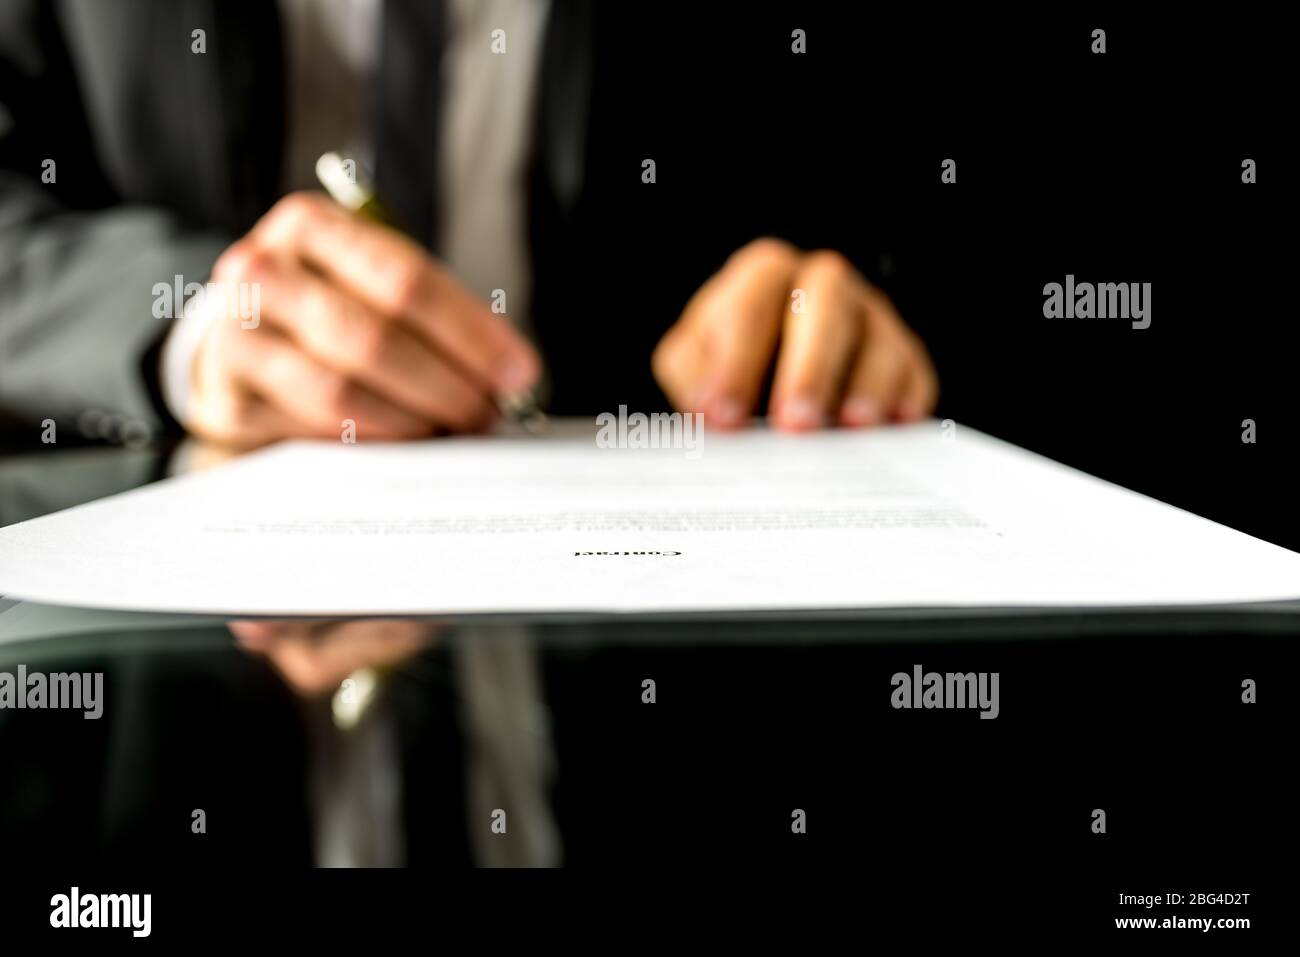 Nahaufnahme der verschwommenen Hände eines Geschäftsmannes, der ein Dokument oder einen Vertrag unterzeichnet, mit Fokus auf den Text Vertrag. Flache freiheitsgrade Stockfoto